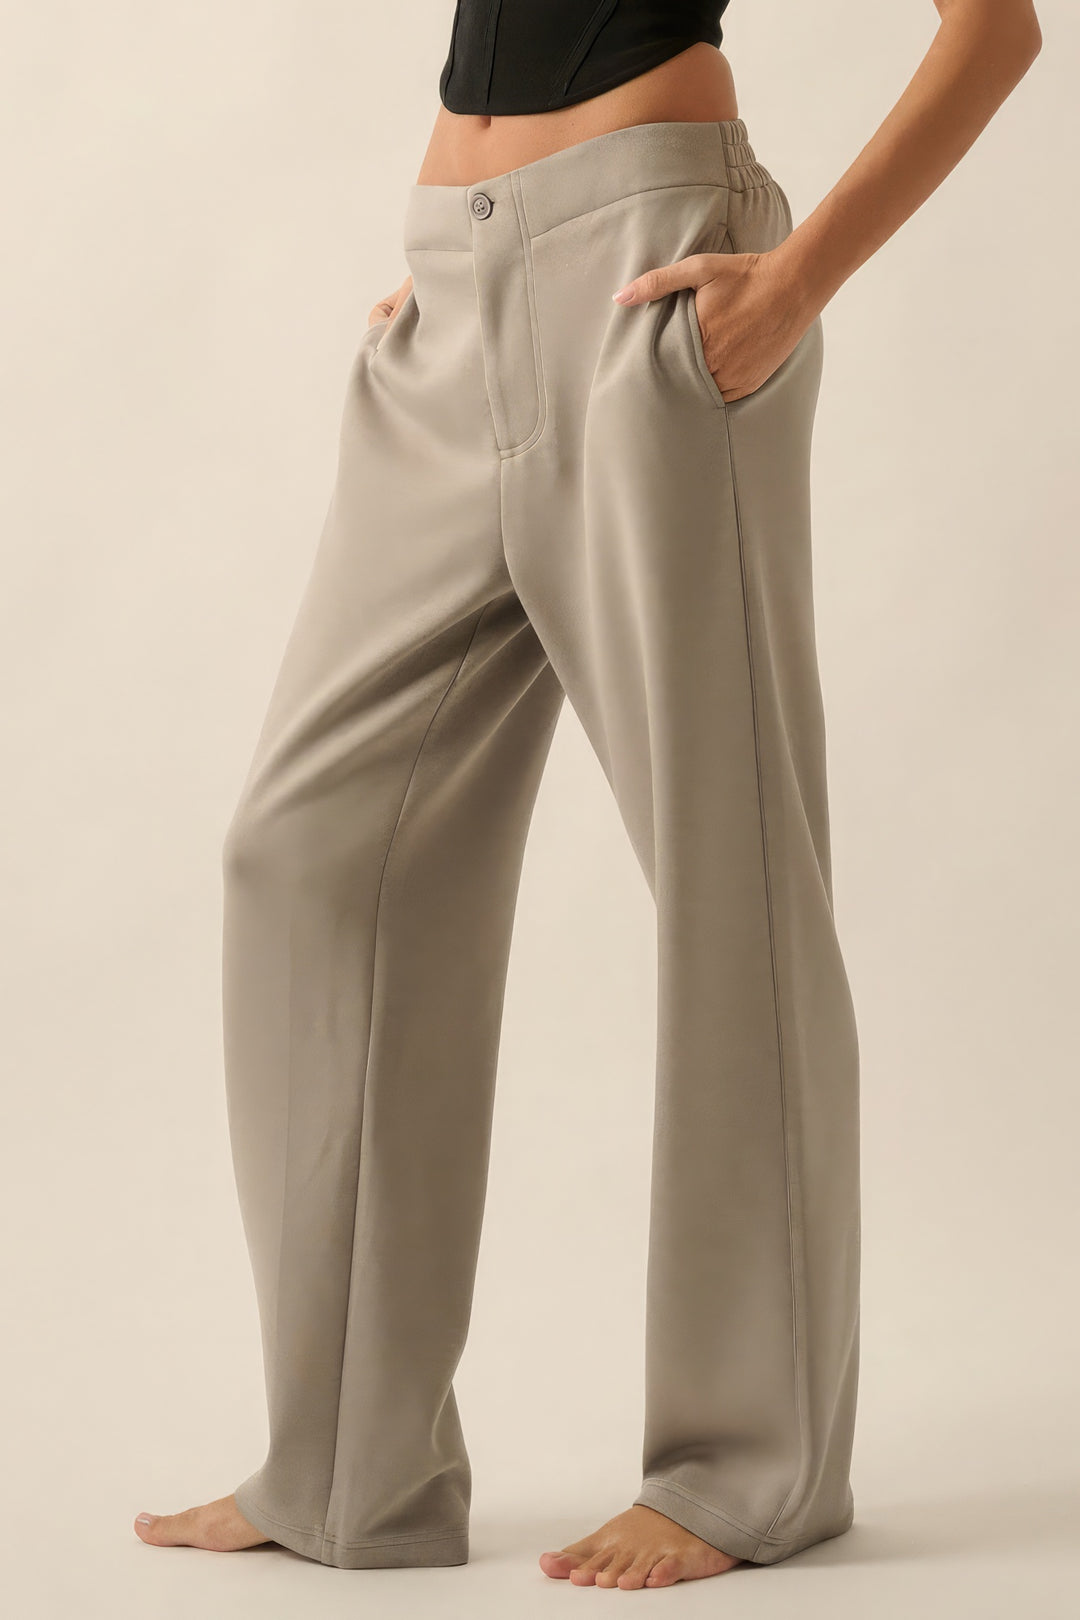 Premium Scuba High Waist Button Zip Up Fly Pants - bertofonsi